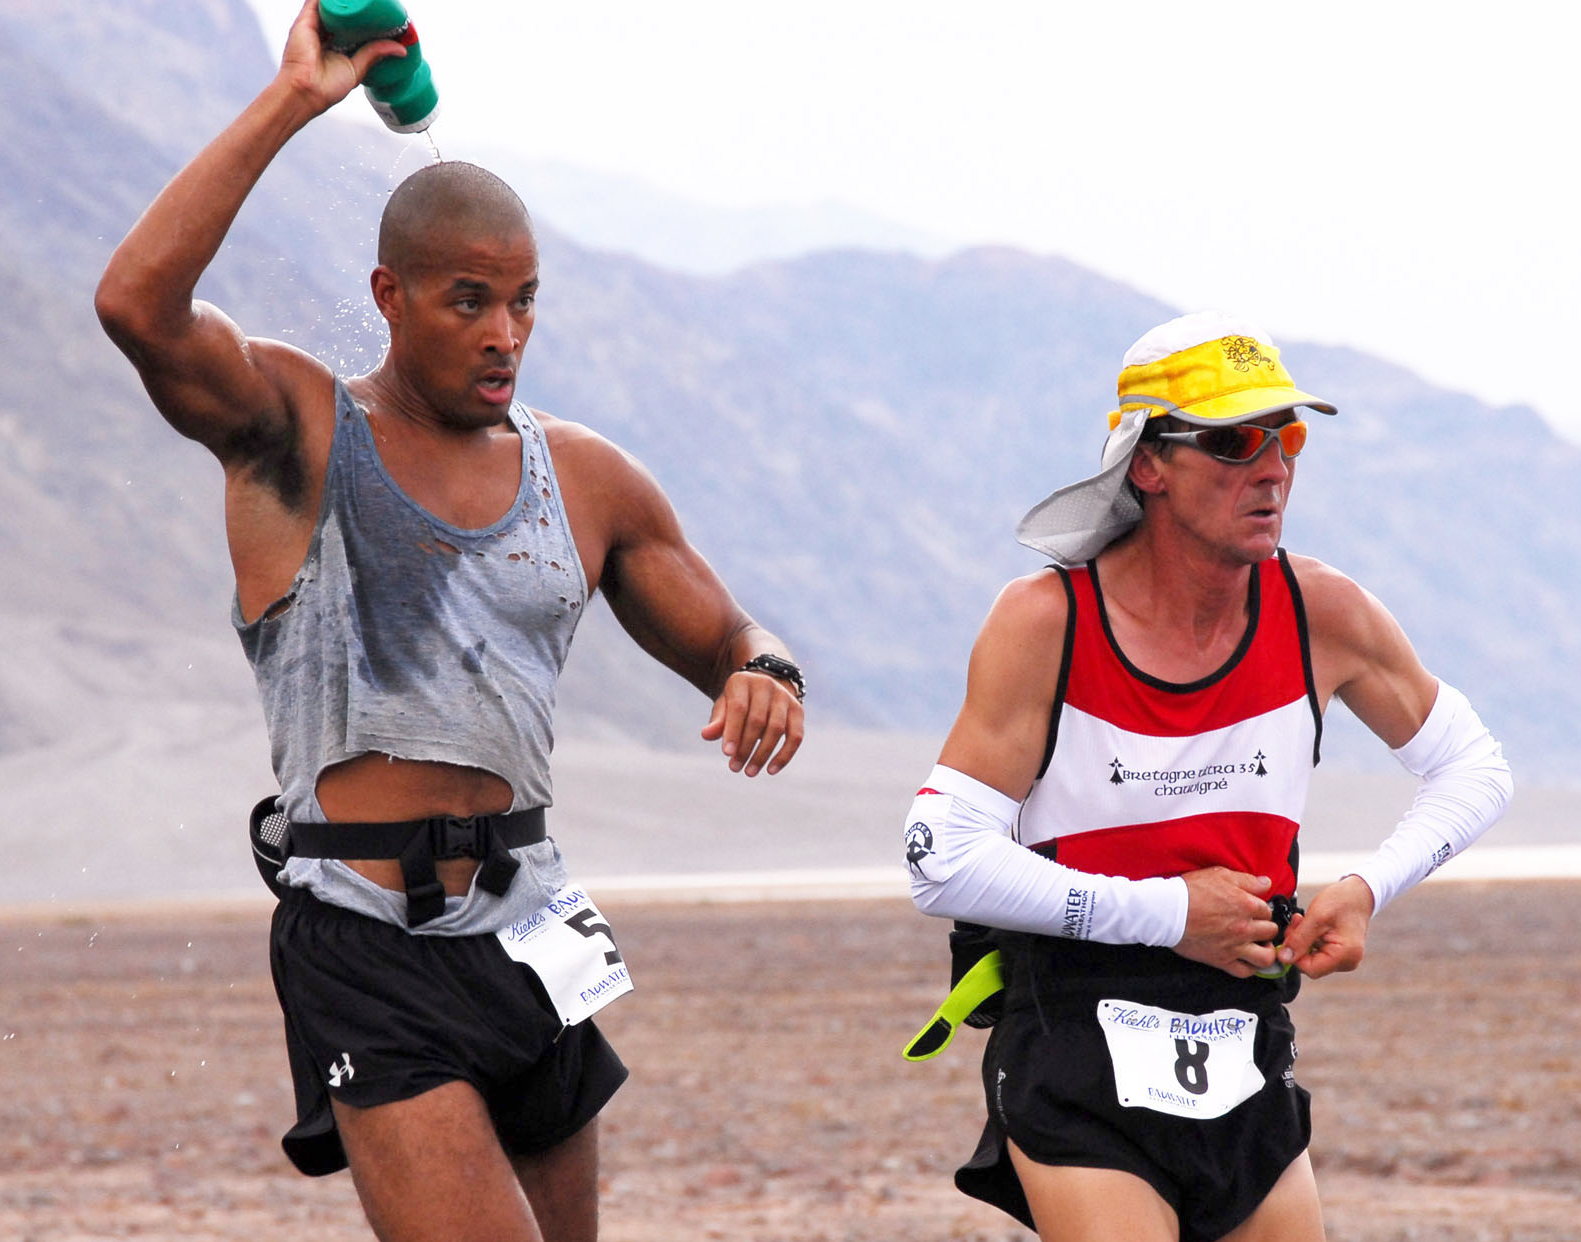 Australská studie u maratonských běžců odhalila, že po skončení závodu mají stejný krevní obraz jako lidé trpící otravou krve.